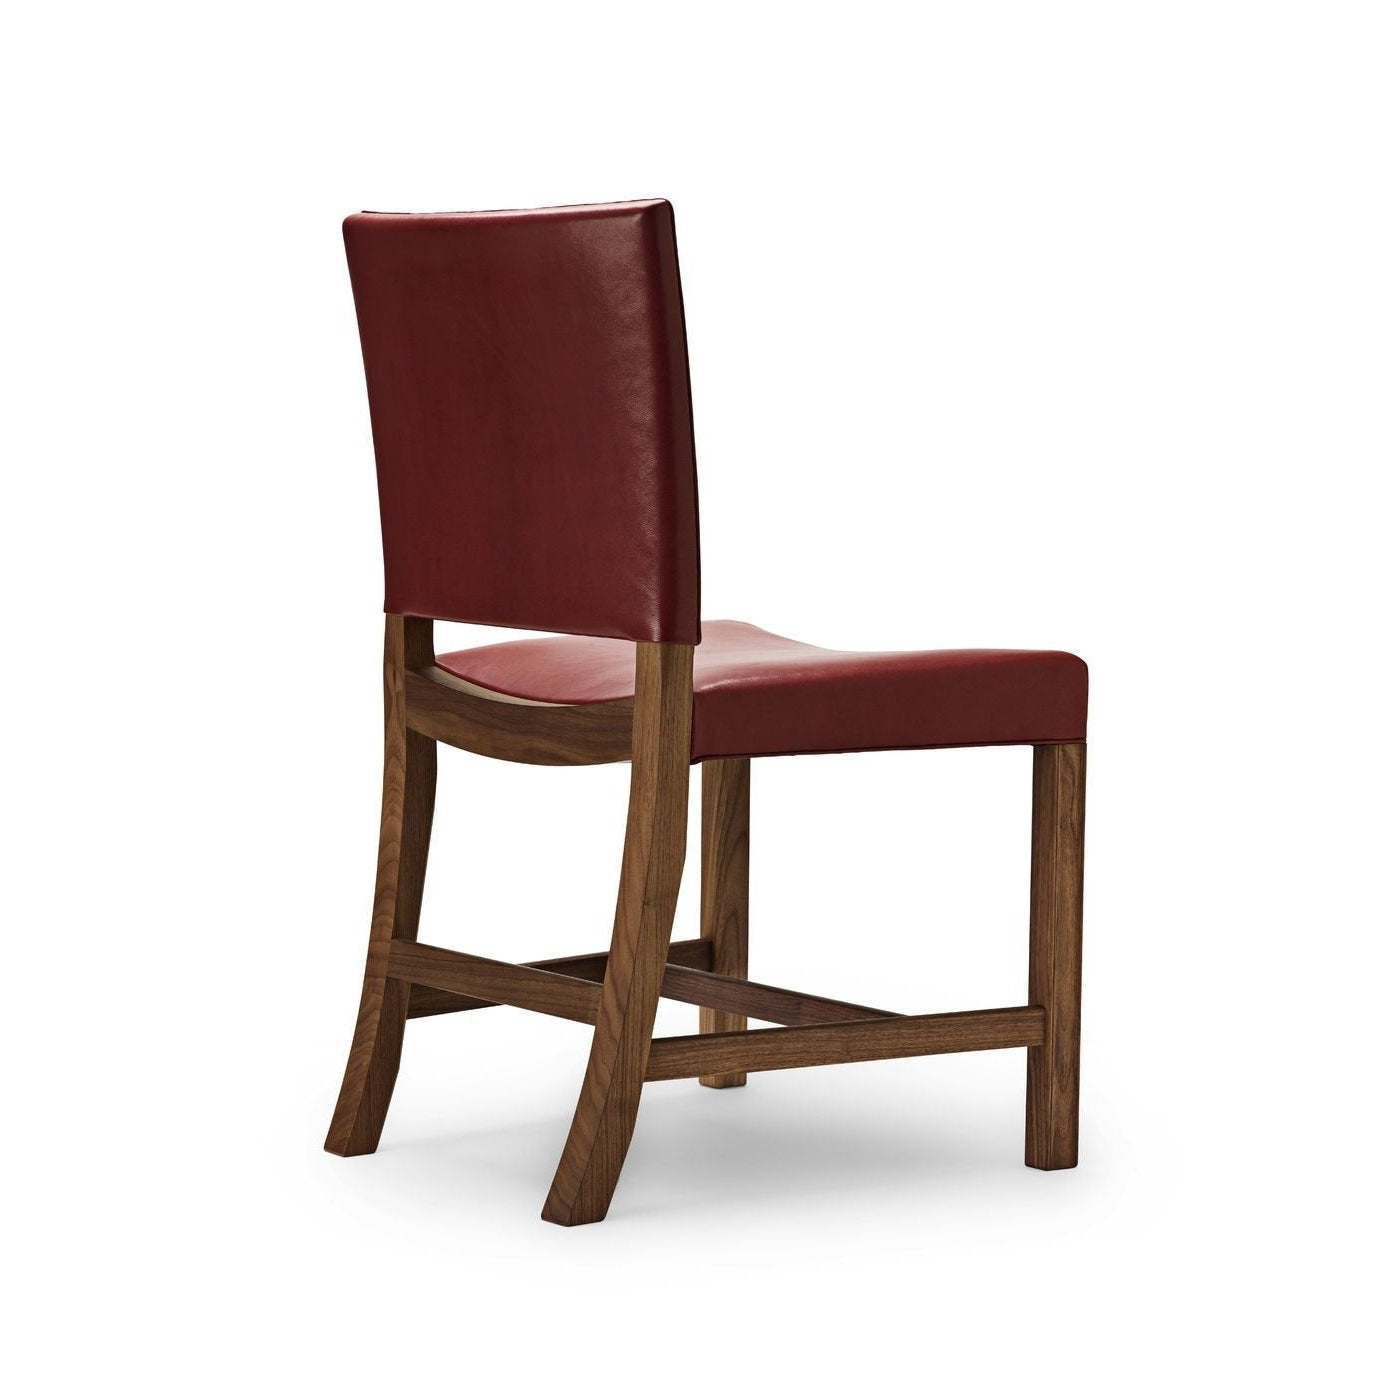 Carl Hansen KK47510 Punainen tuoli, lakattu pähkinä/punainen vuohenahka